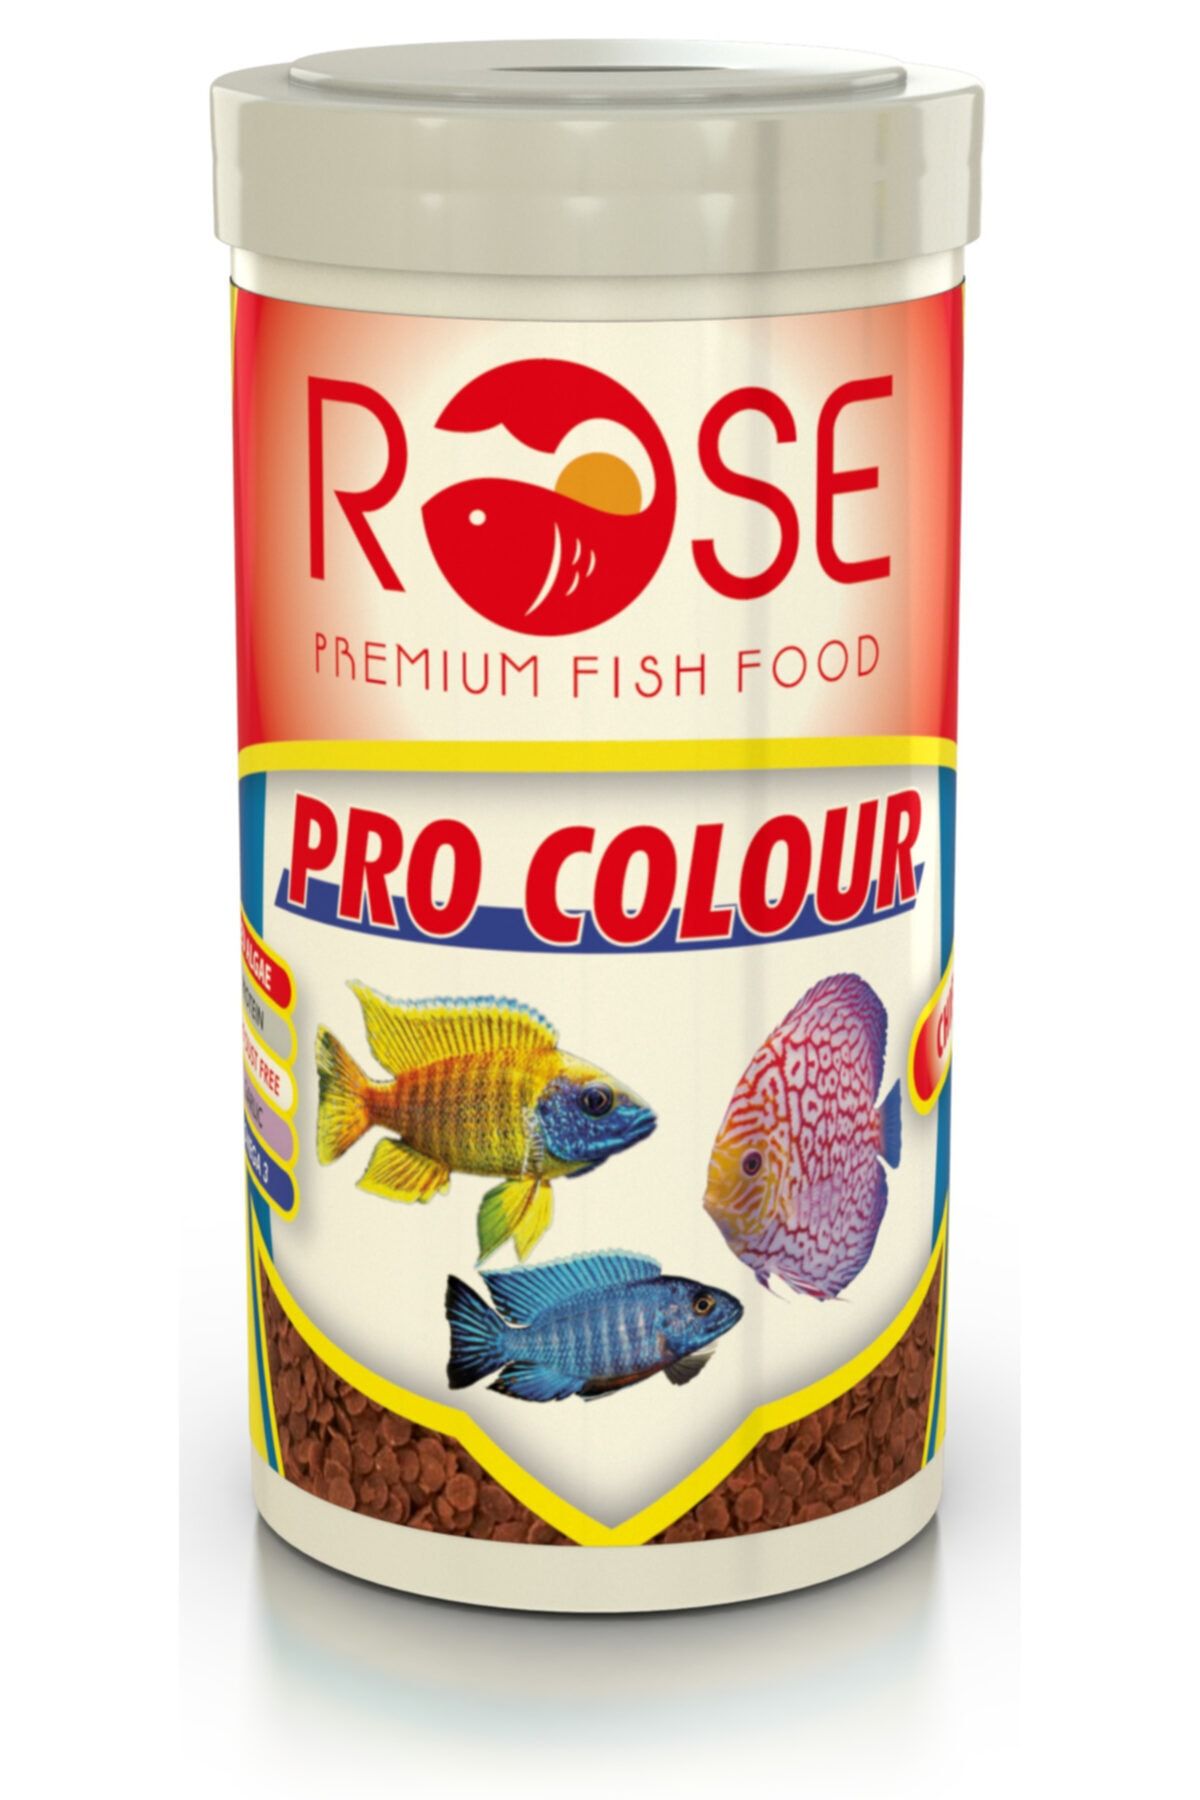 Rose Pro Colour 250 Ml Yüksek Protein Akvaryum Renklendirici Balık Yemi